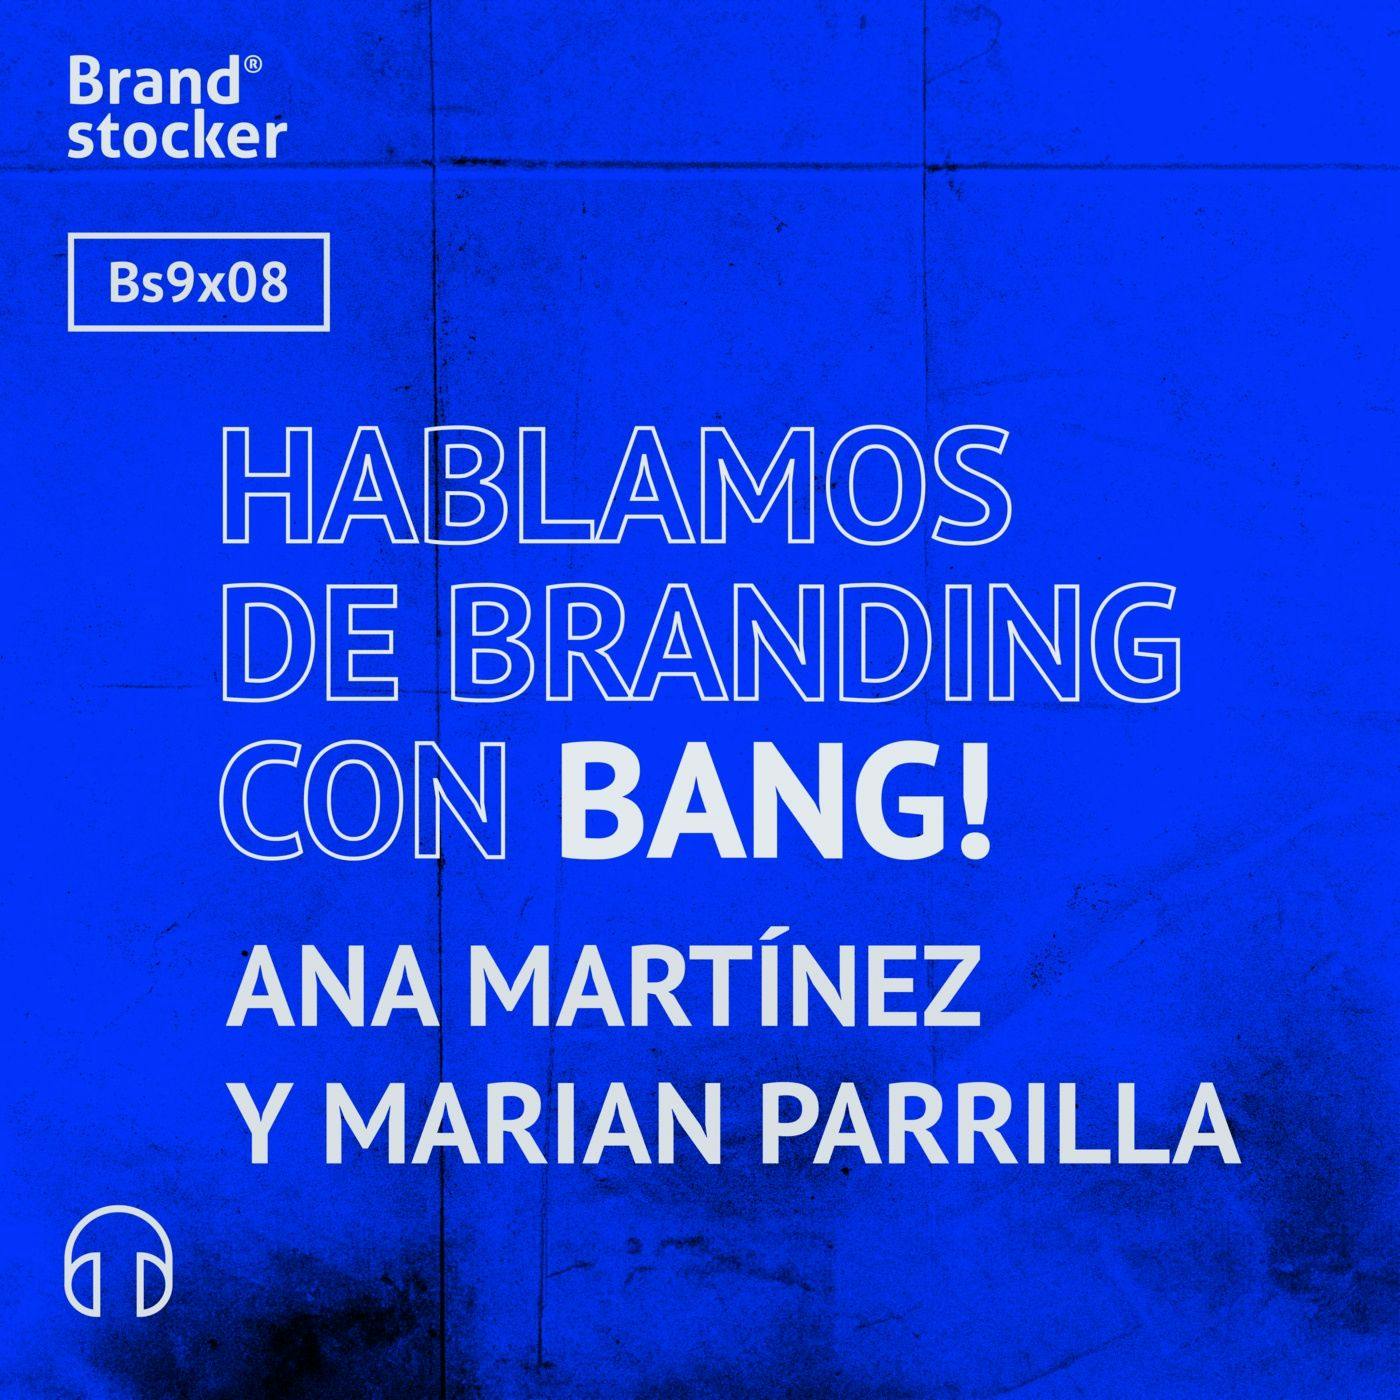 Bs9x08 - Hablamos de branding con Bang!